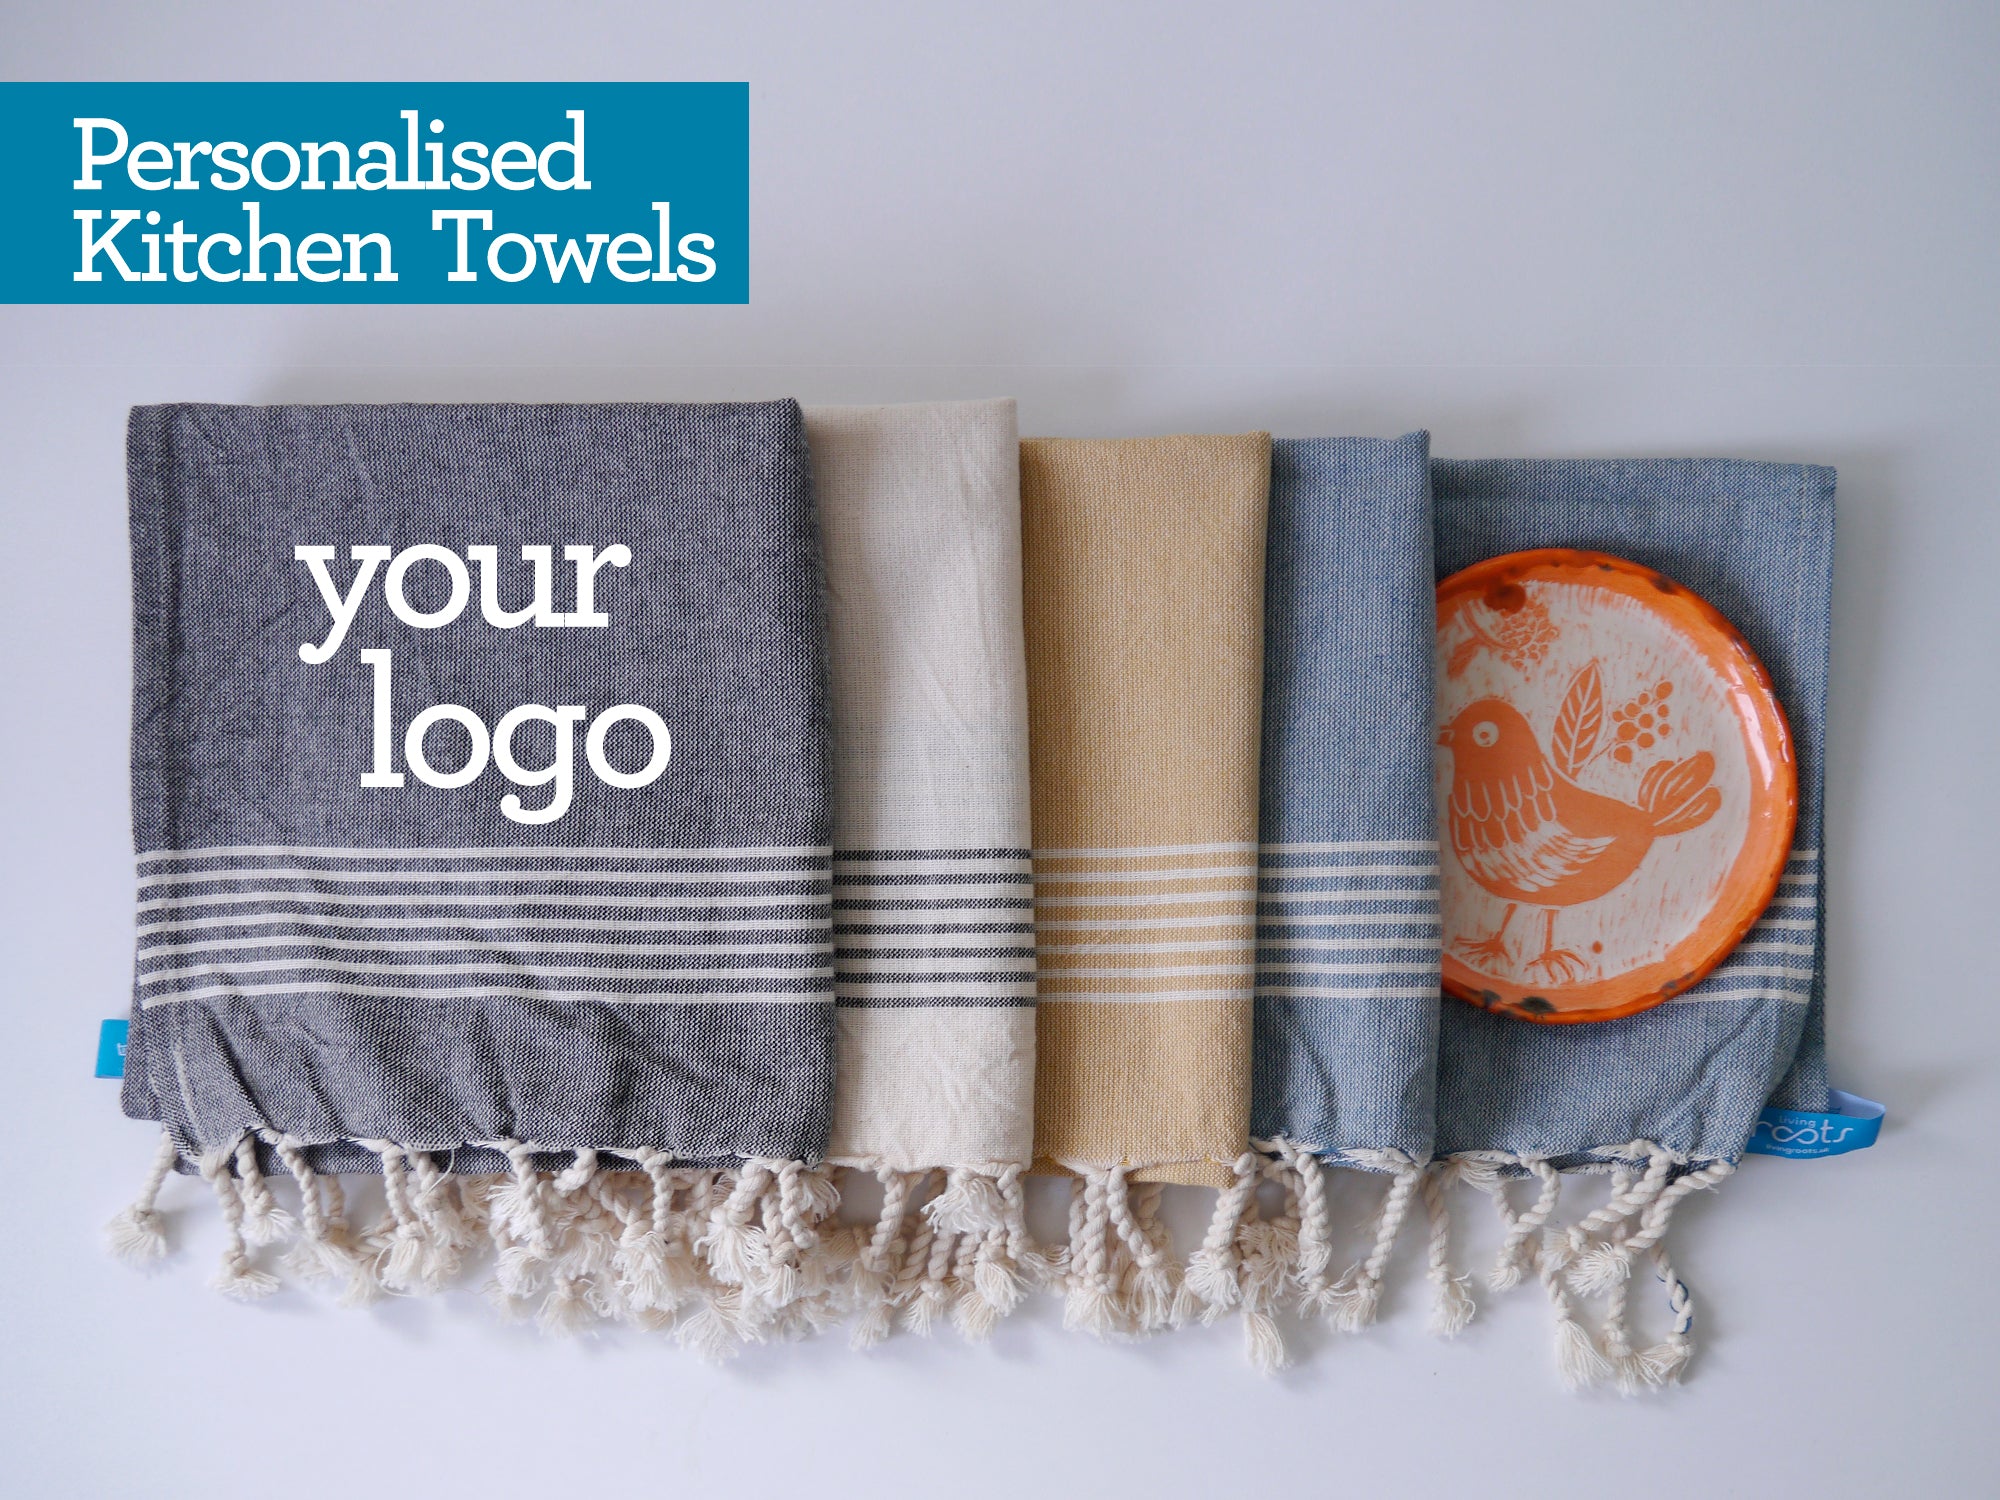 Personalised Tea Towels